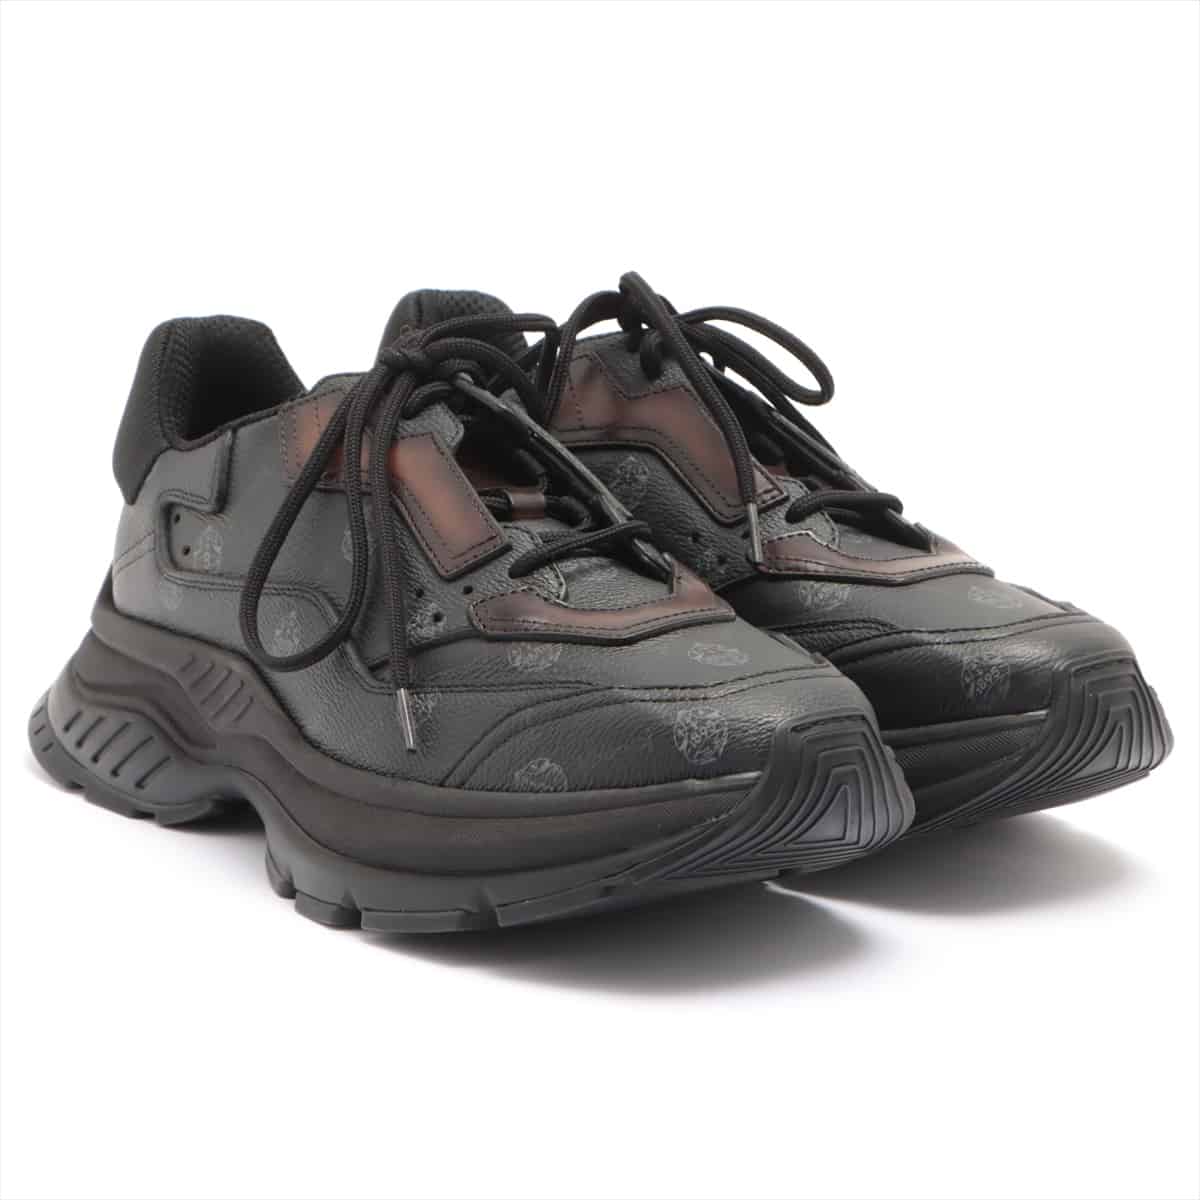 Berluti Leather Sneakers 40 Men's Black gravity Signature